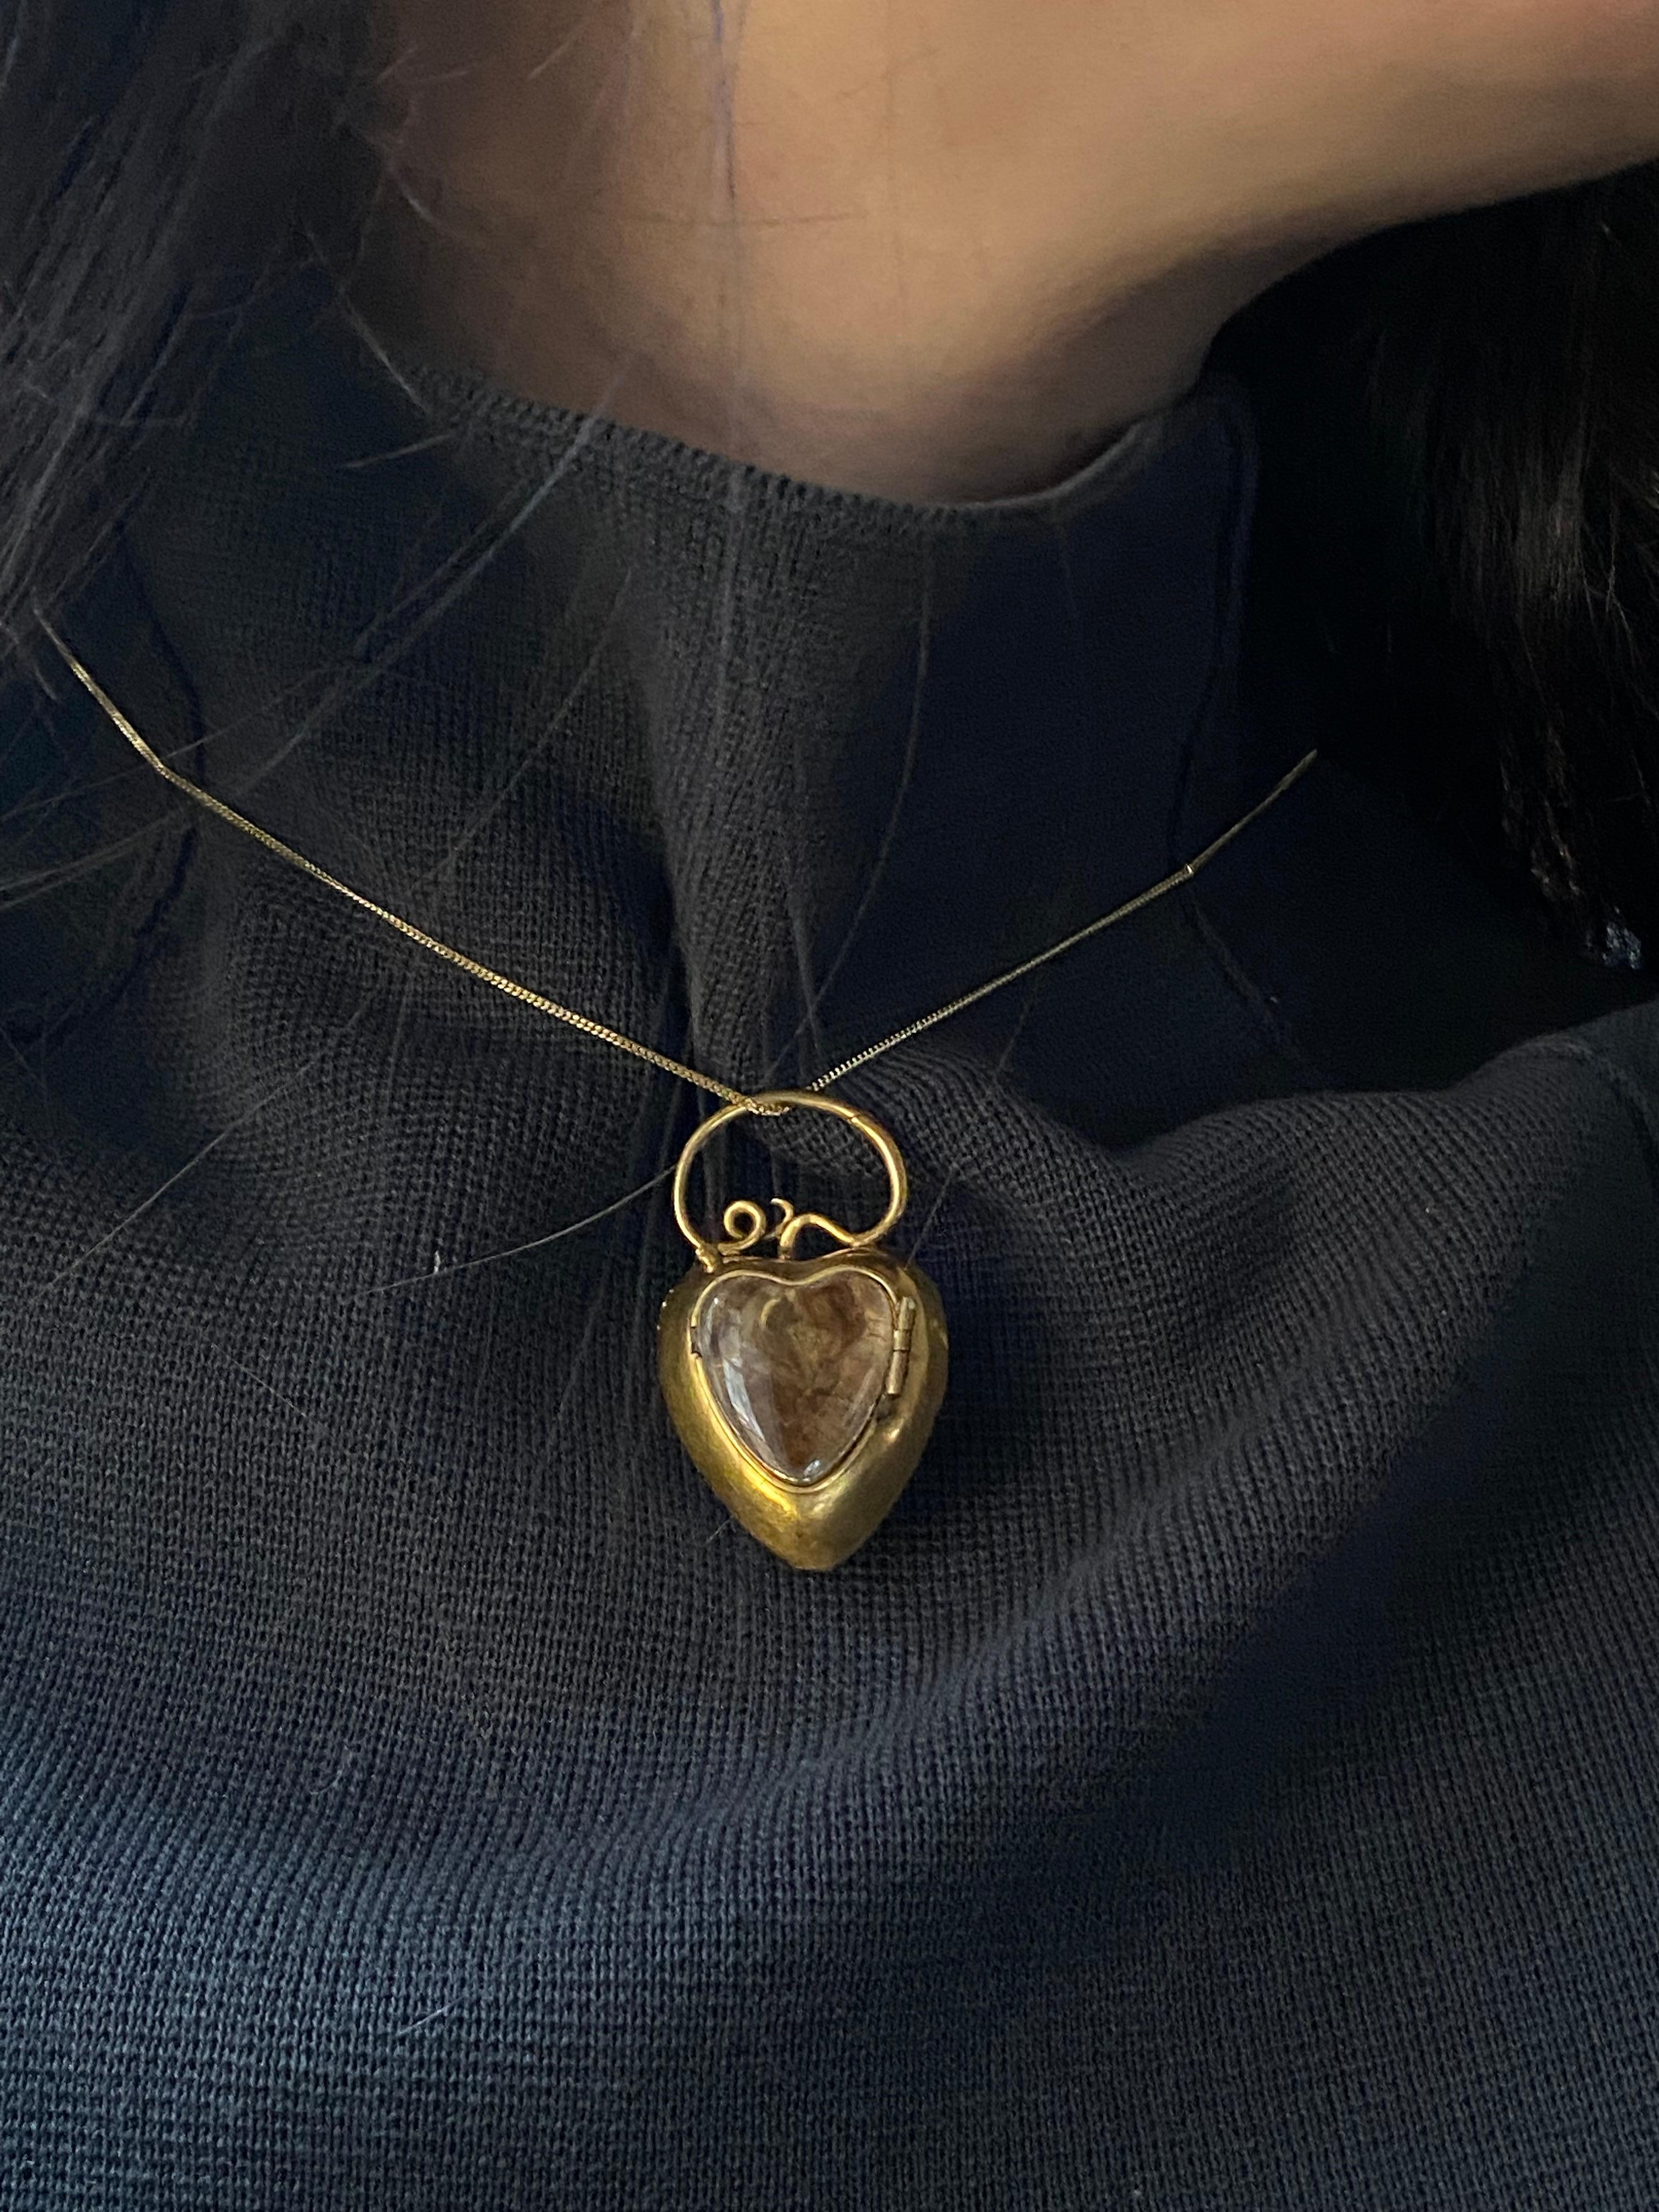 Georgian 18 Karat Gold Heart Shaped Locket Pendant with Snake Motif 2